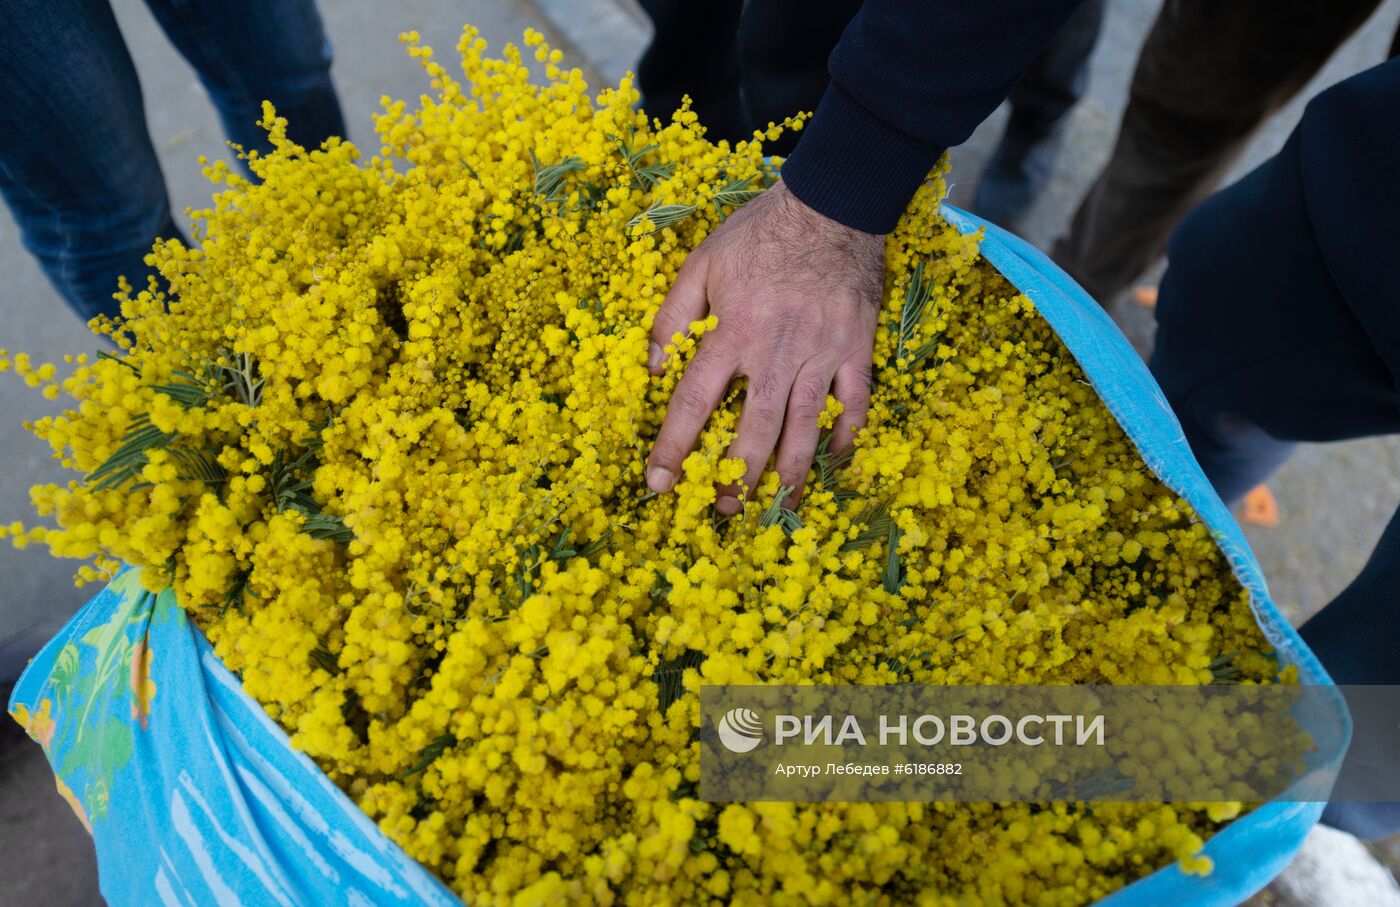 Продажа мимозы из Абхазии на российско-абхазской границе